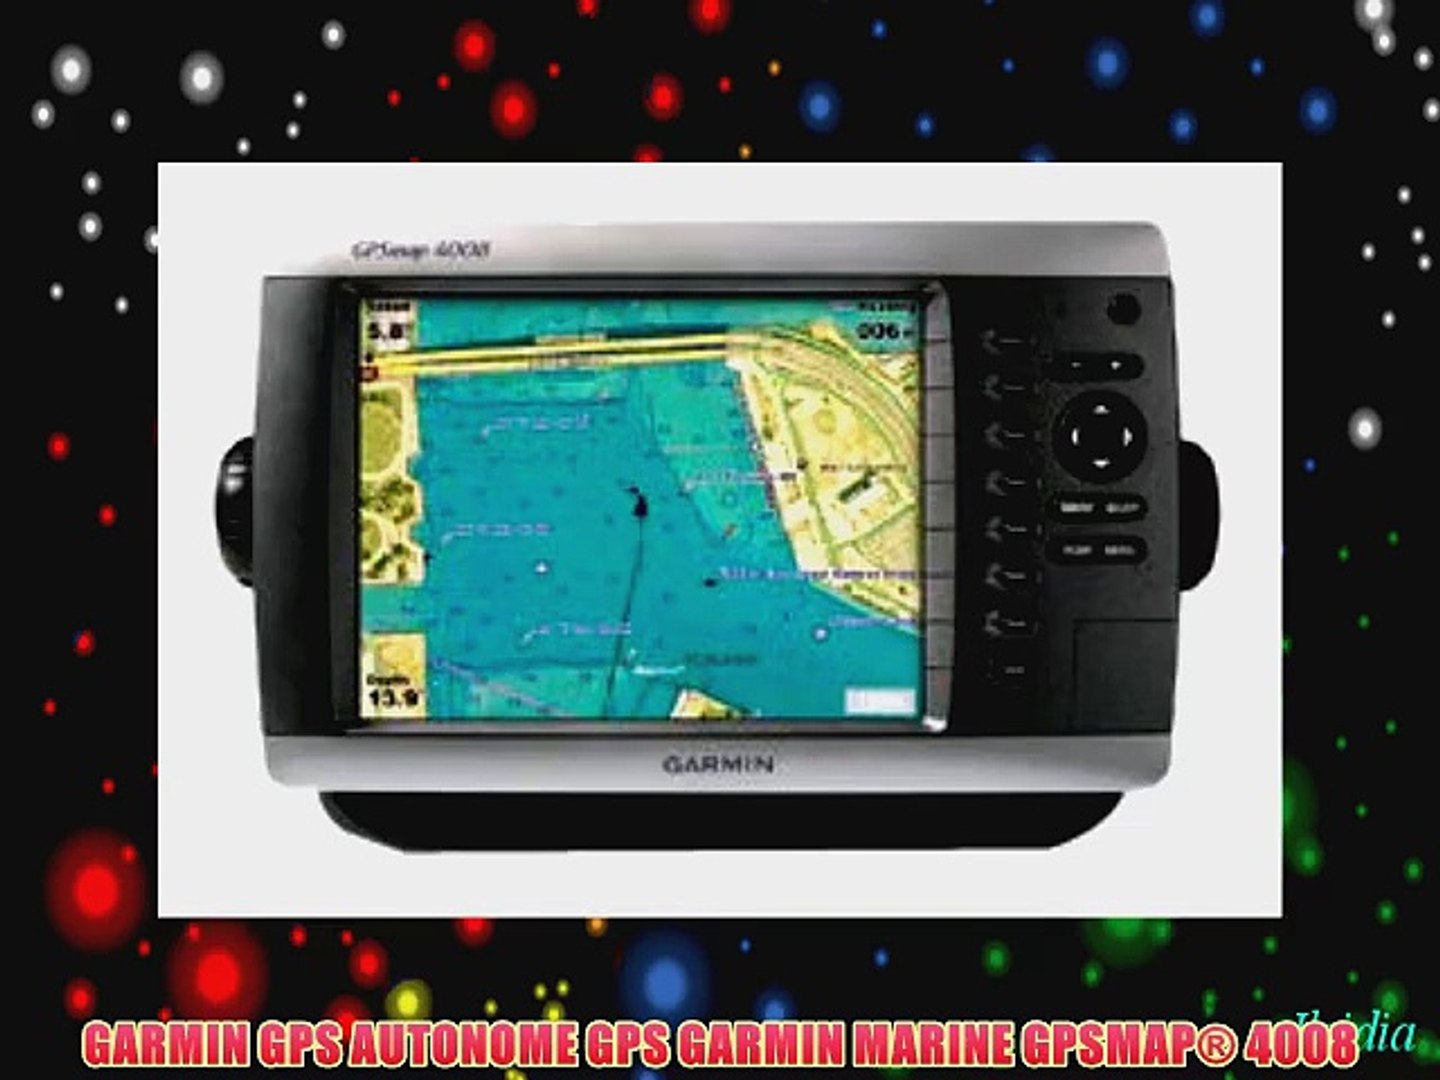 GARMIN GPS AUTONOME GPS GARMIN MARINE GPSMAP? 4008 - video Dailymotion